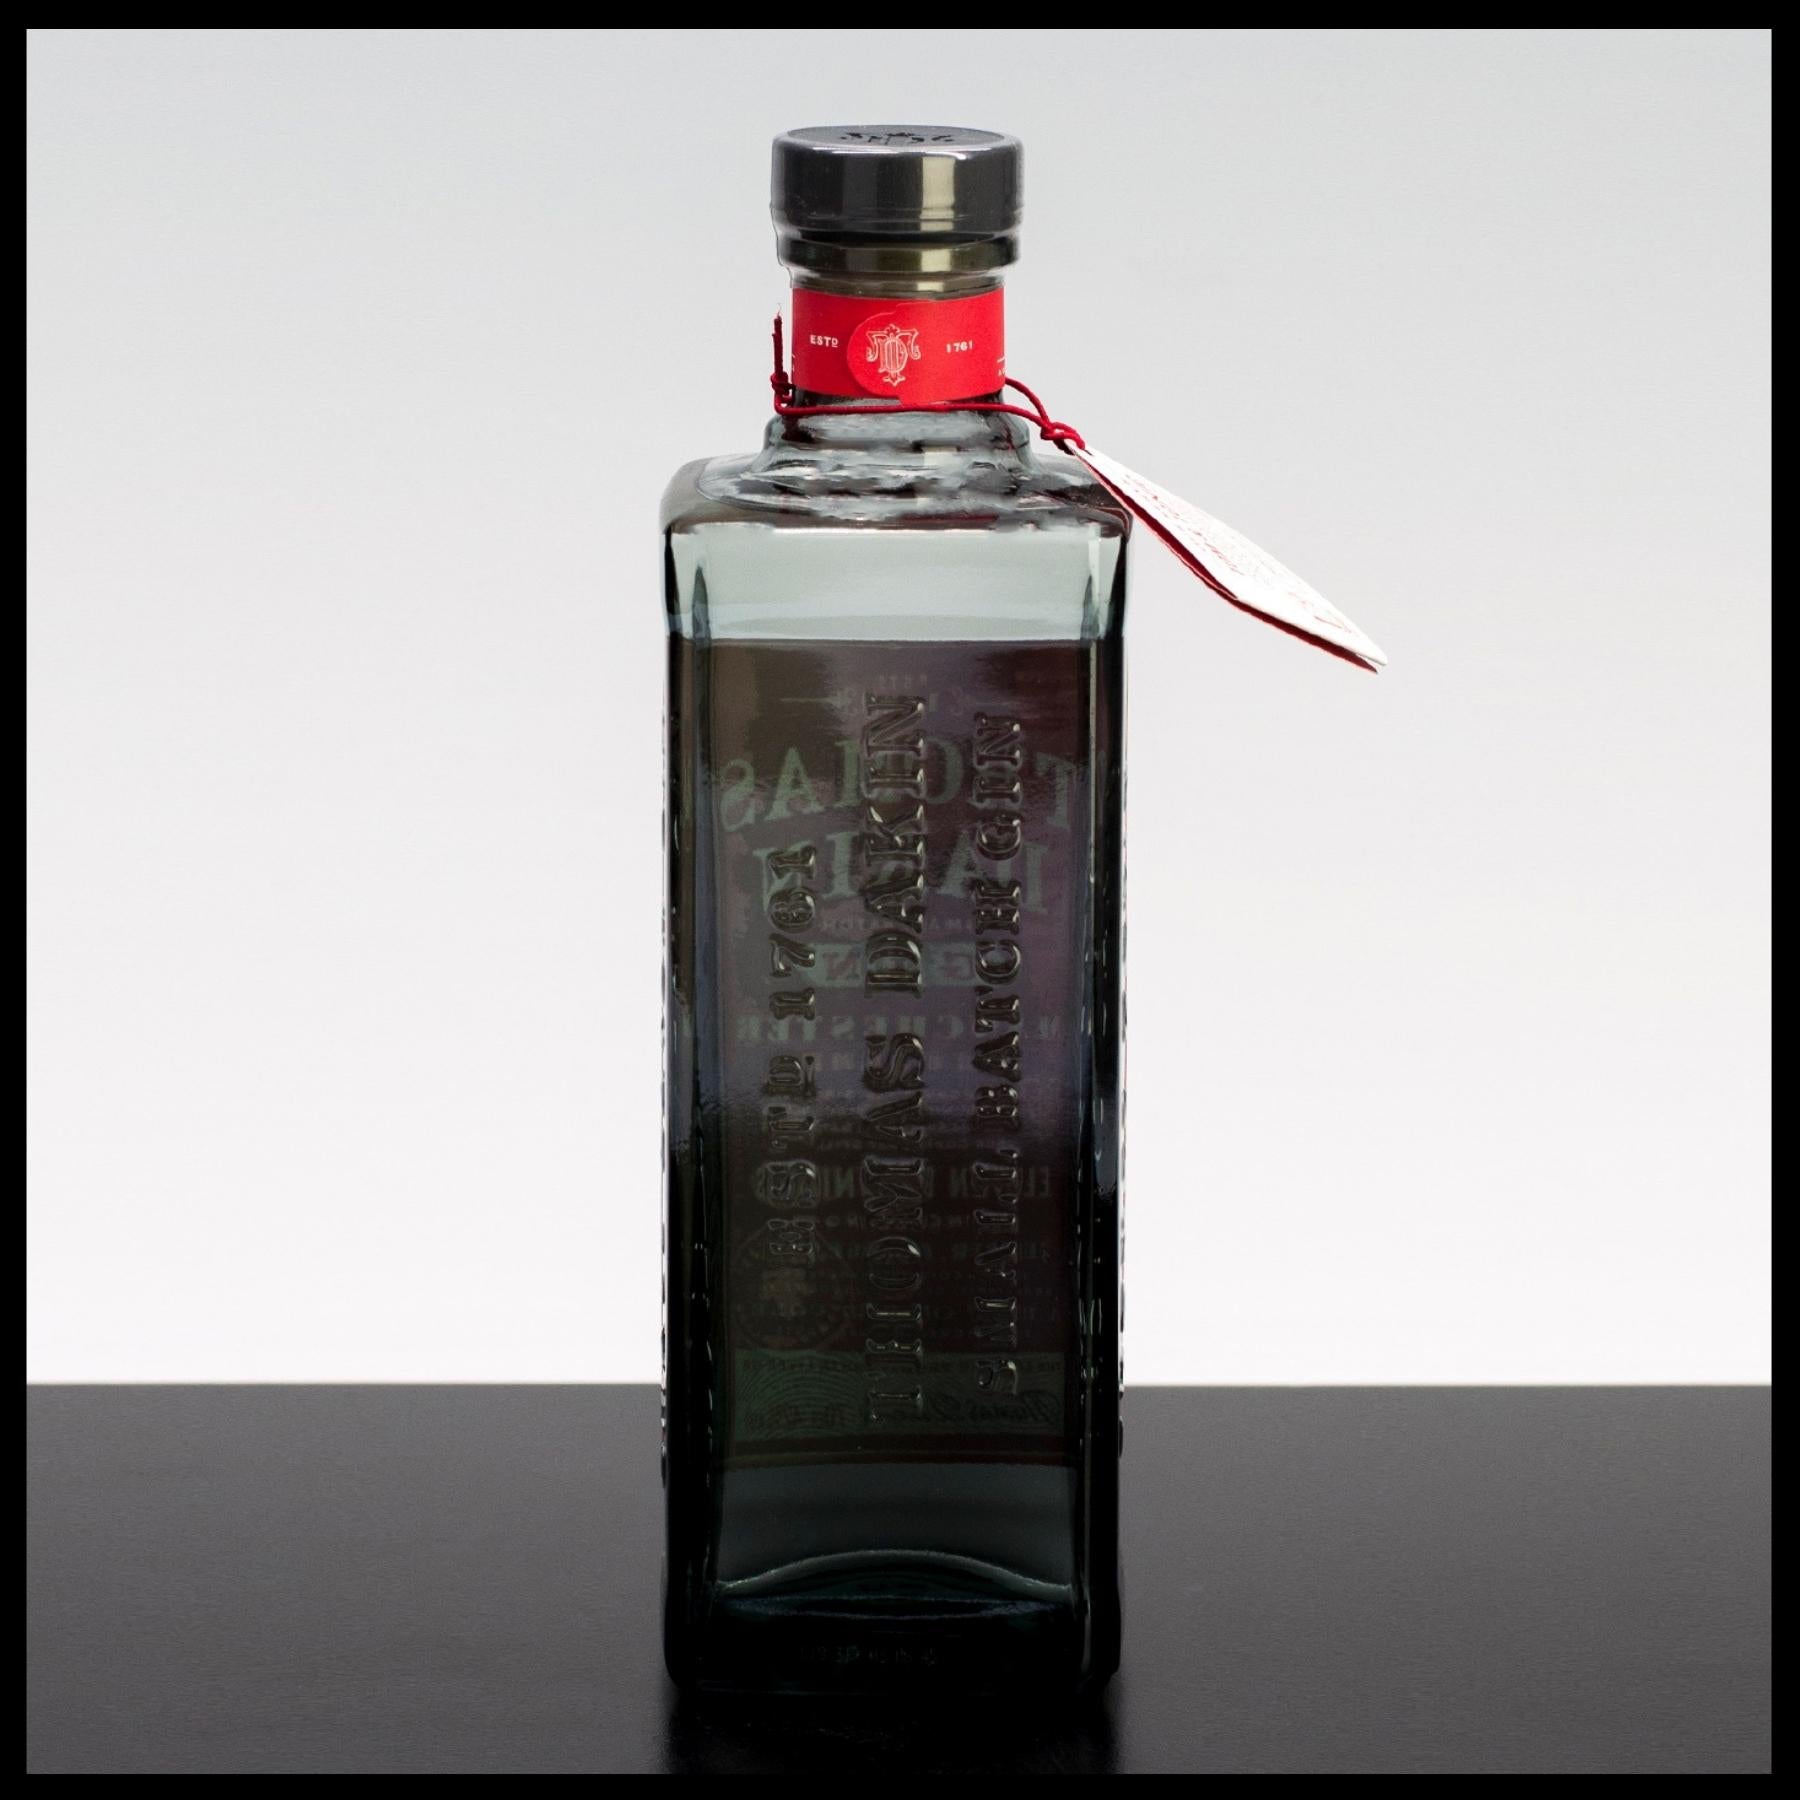 Thomas Dakin Small Batch Gin 0,7L - 42% Vol. - Trinklusiv